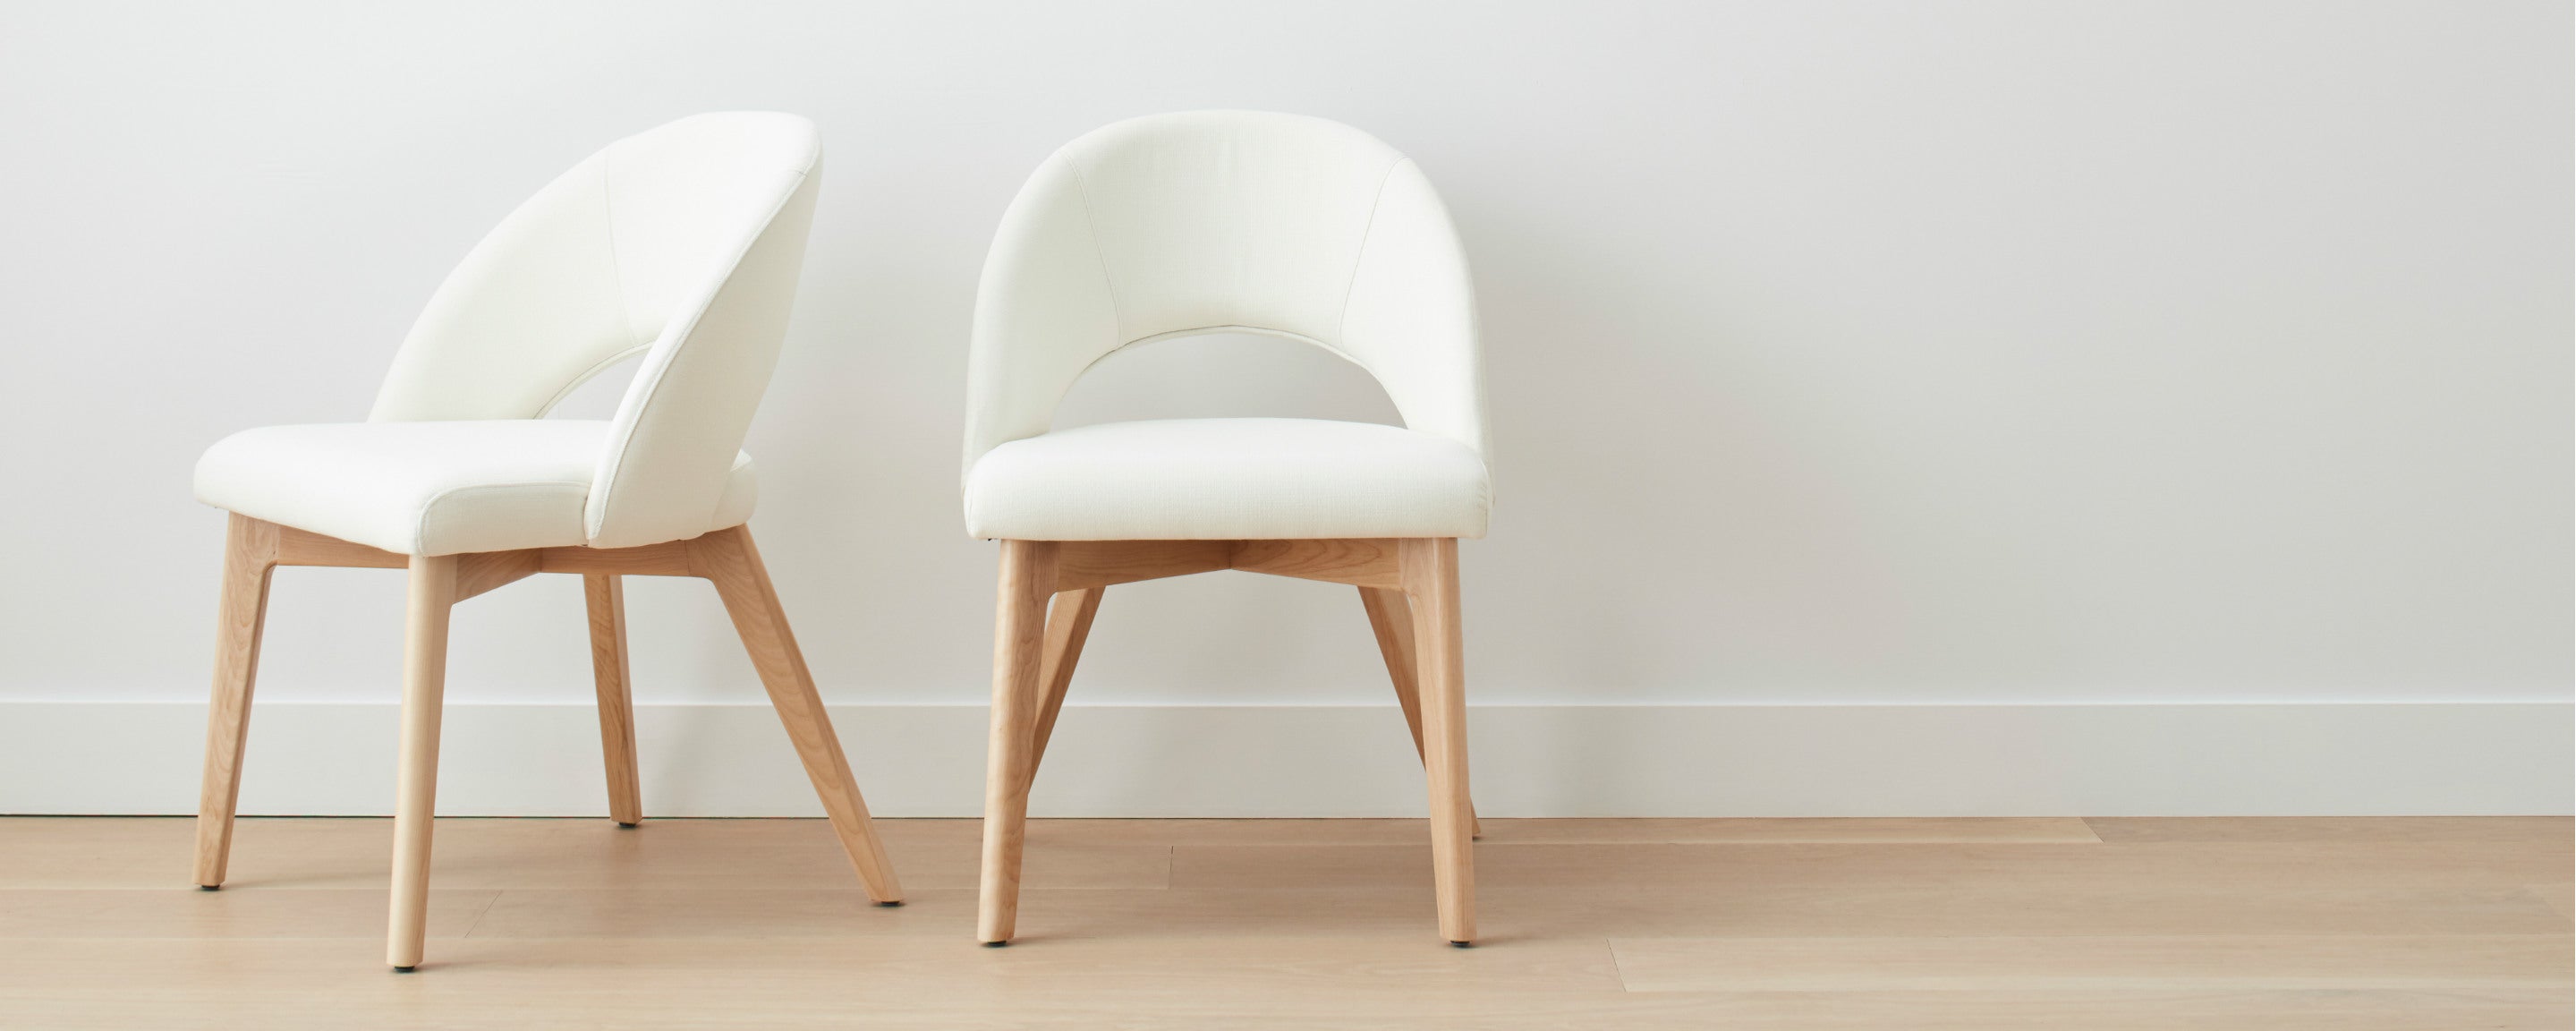 homenature dining ventura chair – the